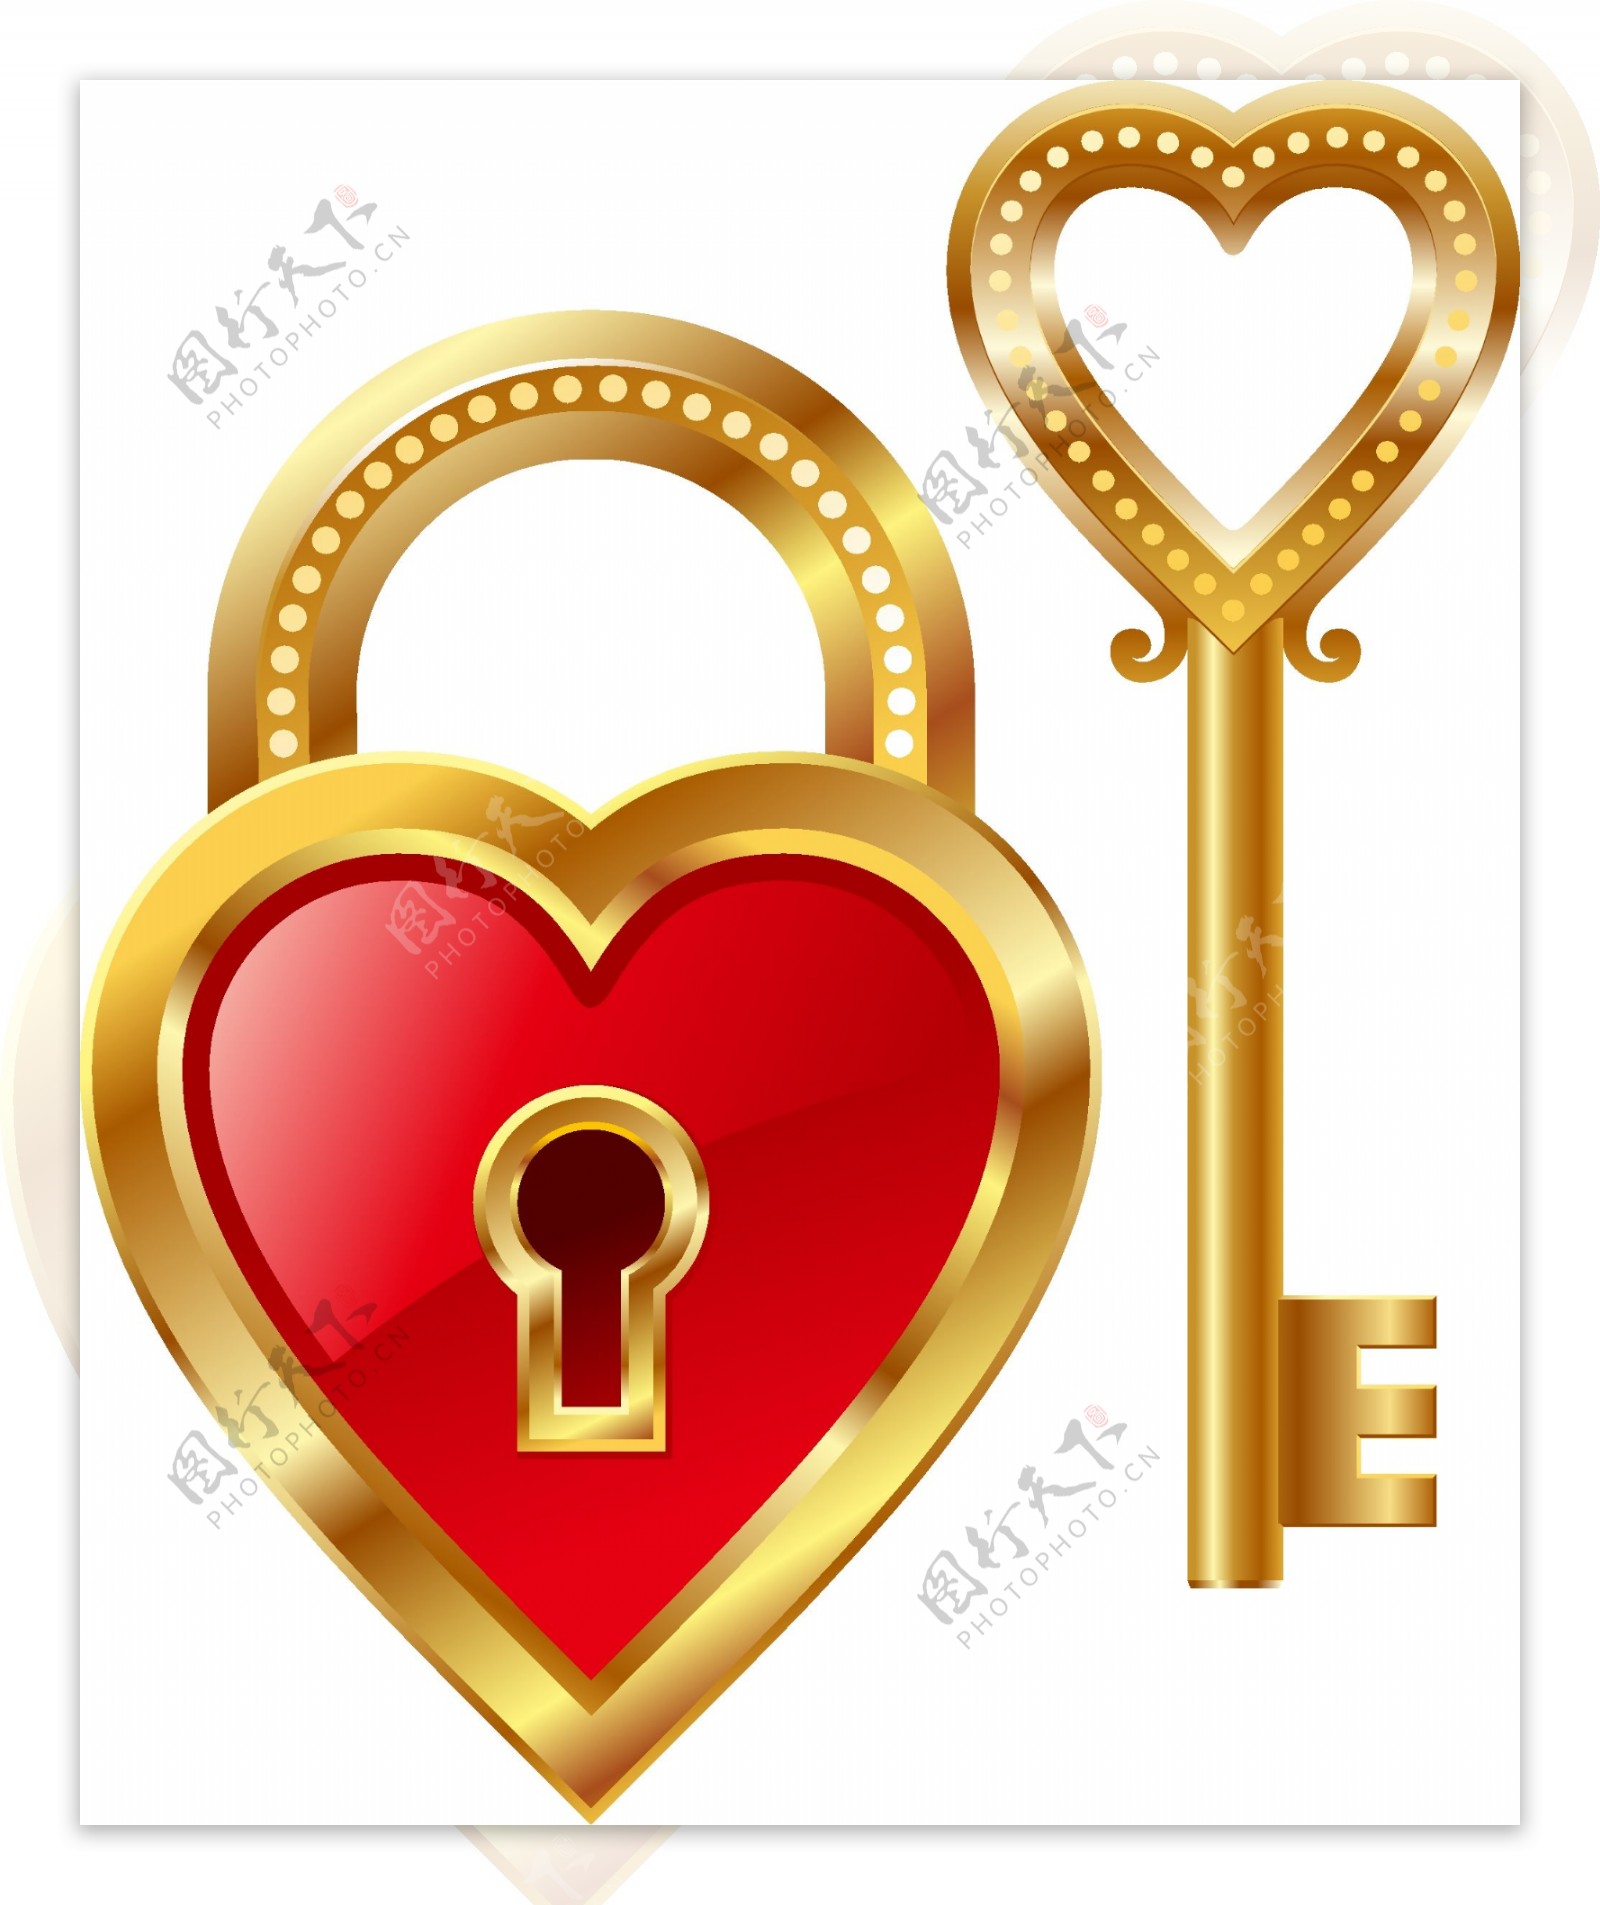 情侣爱心钥匙与小锁